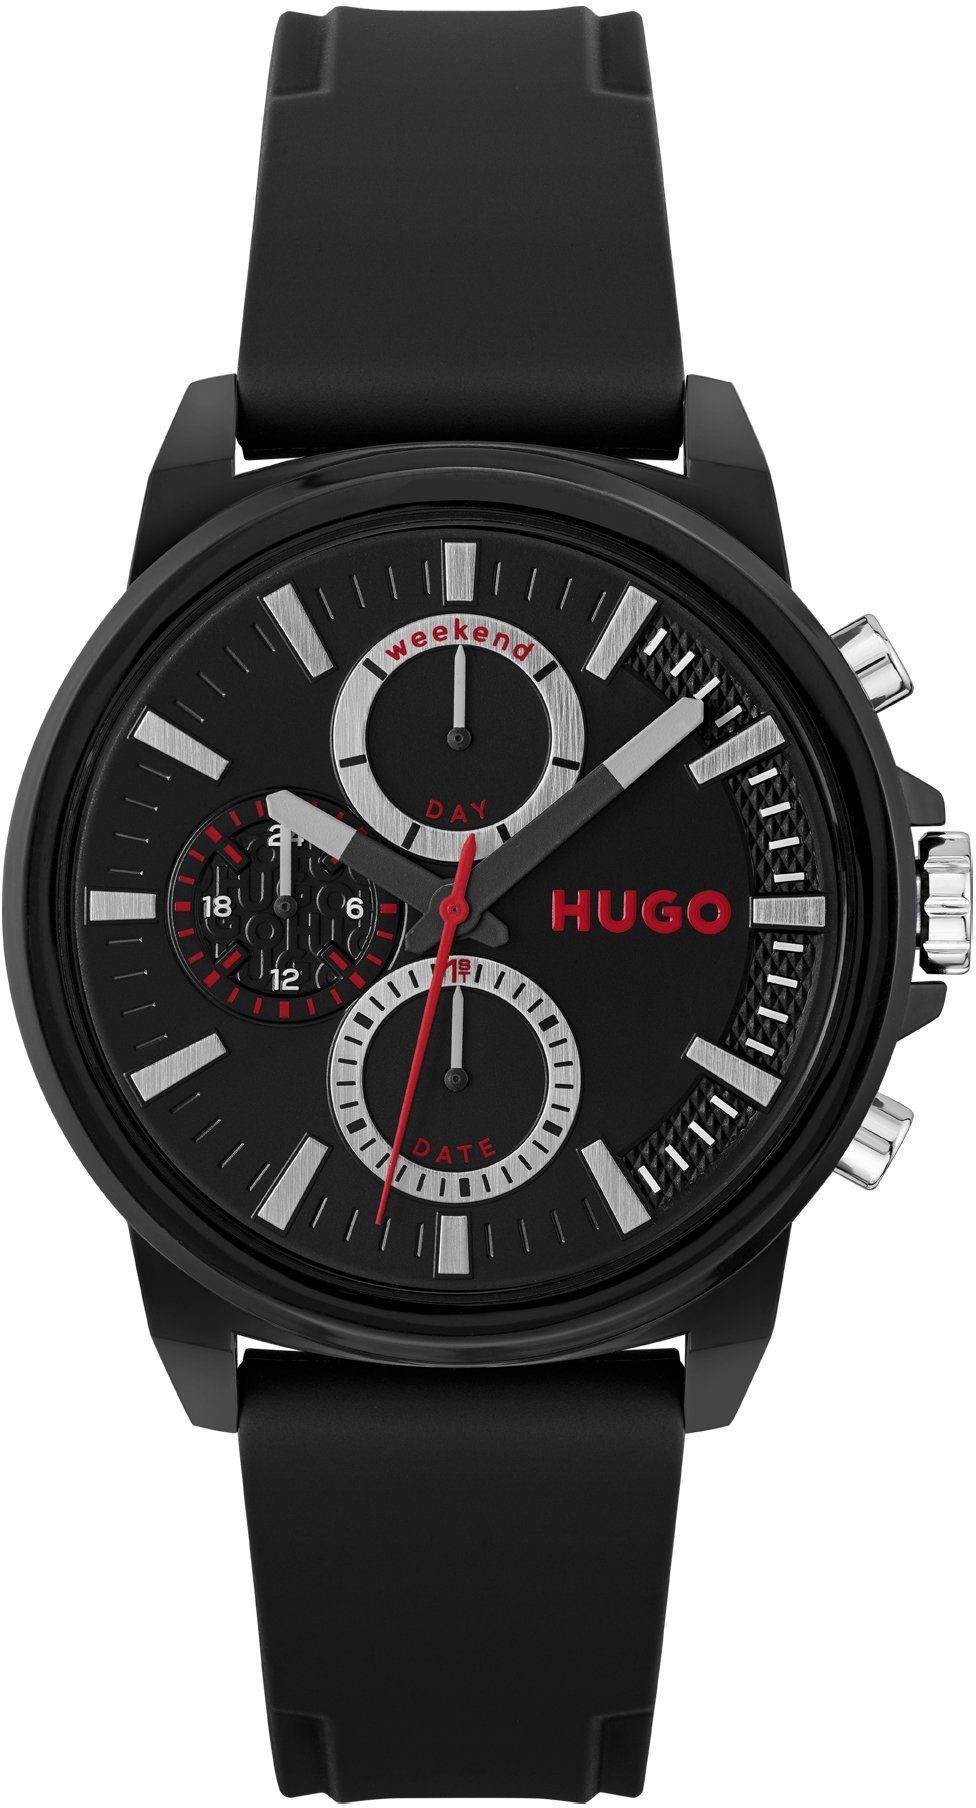 HUGO Multifunktionsuhr #Relax, 1530256, Quarzuhr, Armbanduhr, Herrenuhr, Datum, 12/24-Stunden-Anzeige